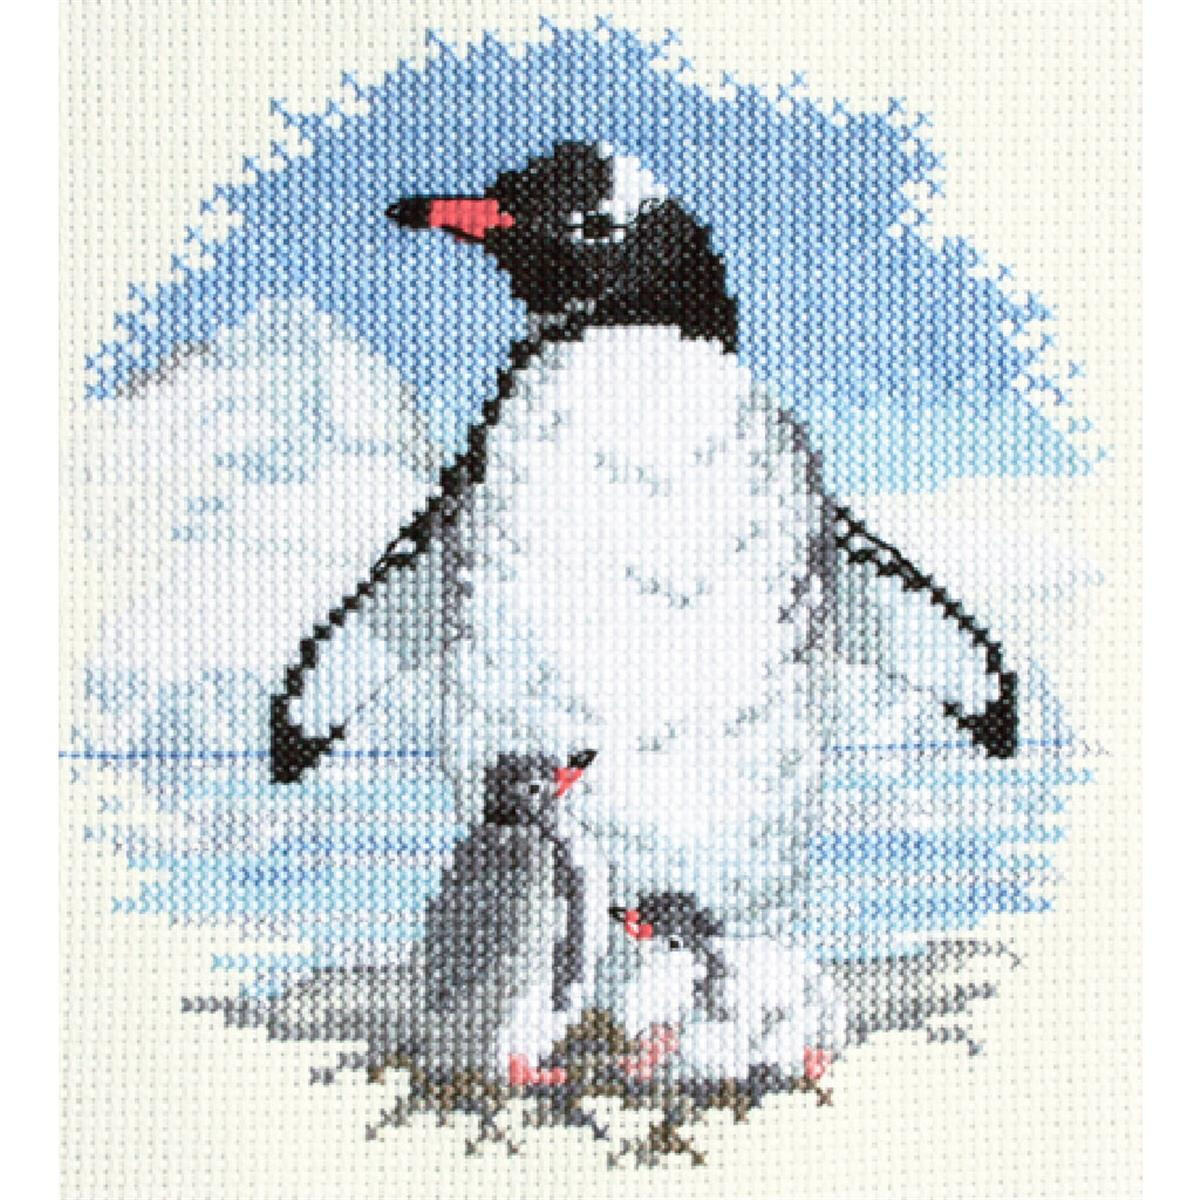 Een borduurpakket van Bothy Threads met een pinguïn...